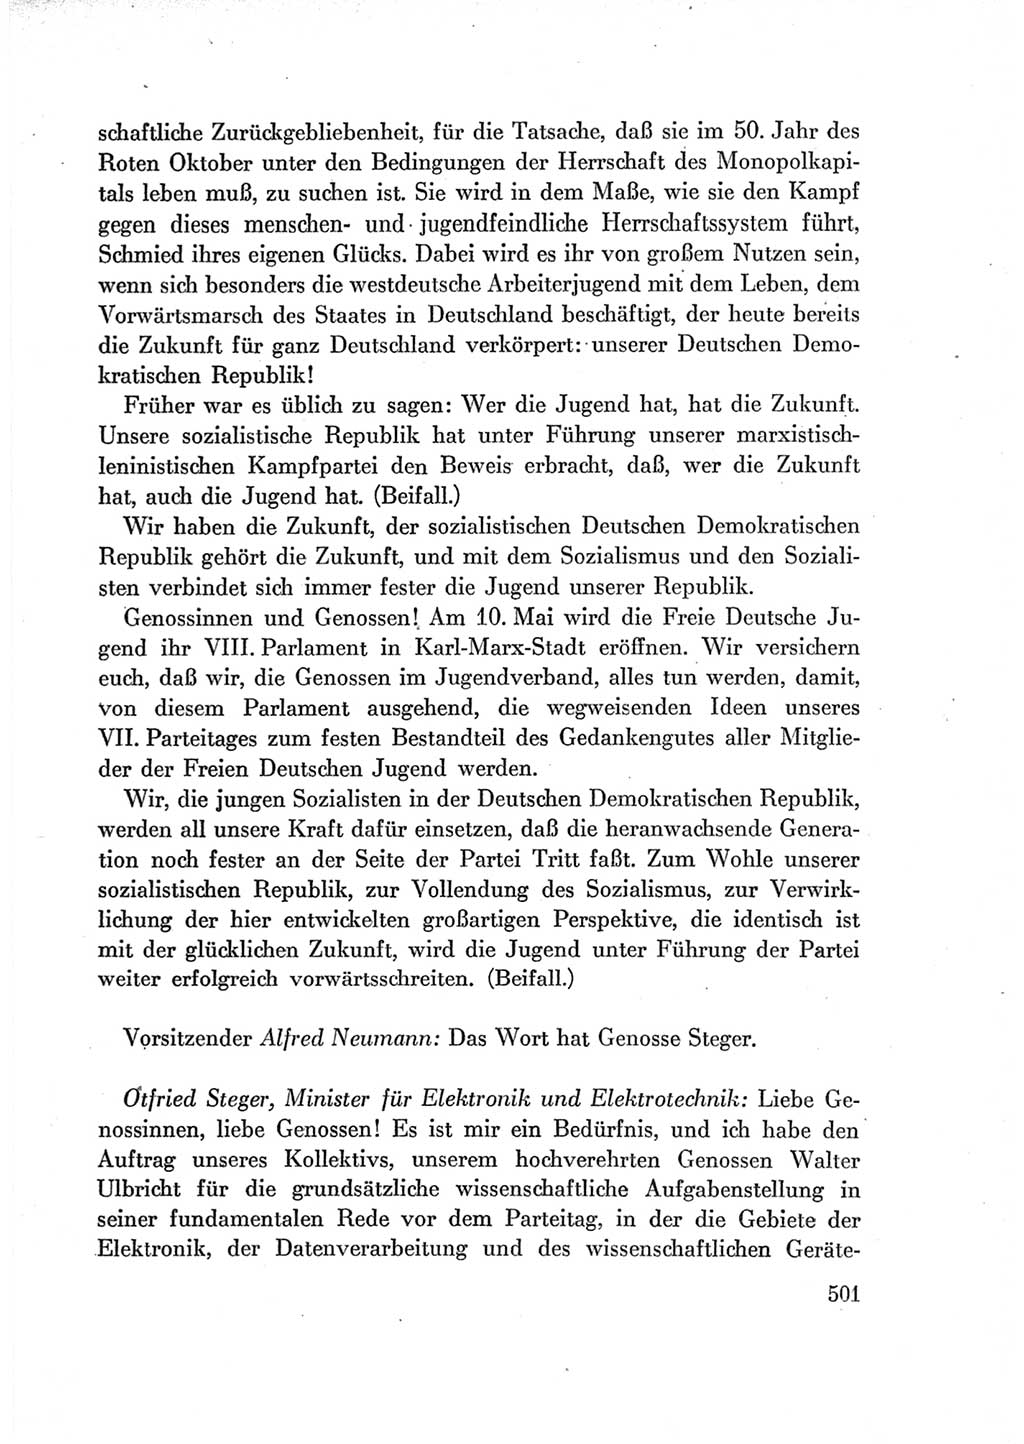 Protokoll der Verhandlungen des Ⅶ. Parteitages der Sozialistischen Einheitspartei Deutschlands (SED) [Deutsche Demokratische Republik (DDR)] 1967, Band Ⅰ, Seite 501 (Prot. Verh. Ⅶ. PT SED DDR 1967, Bd. Ⅰ, S. 501)